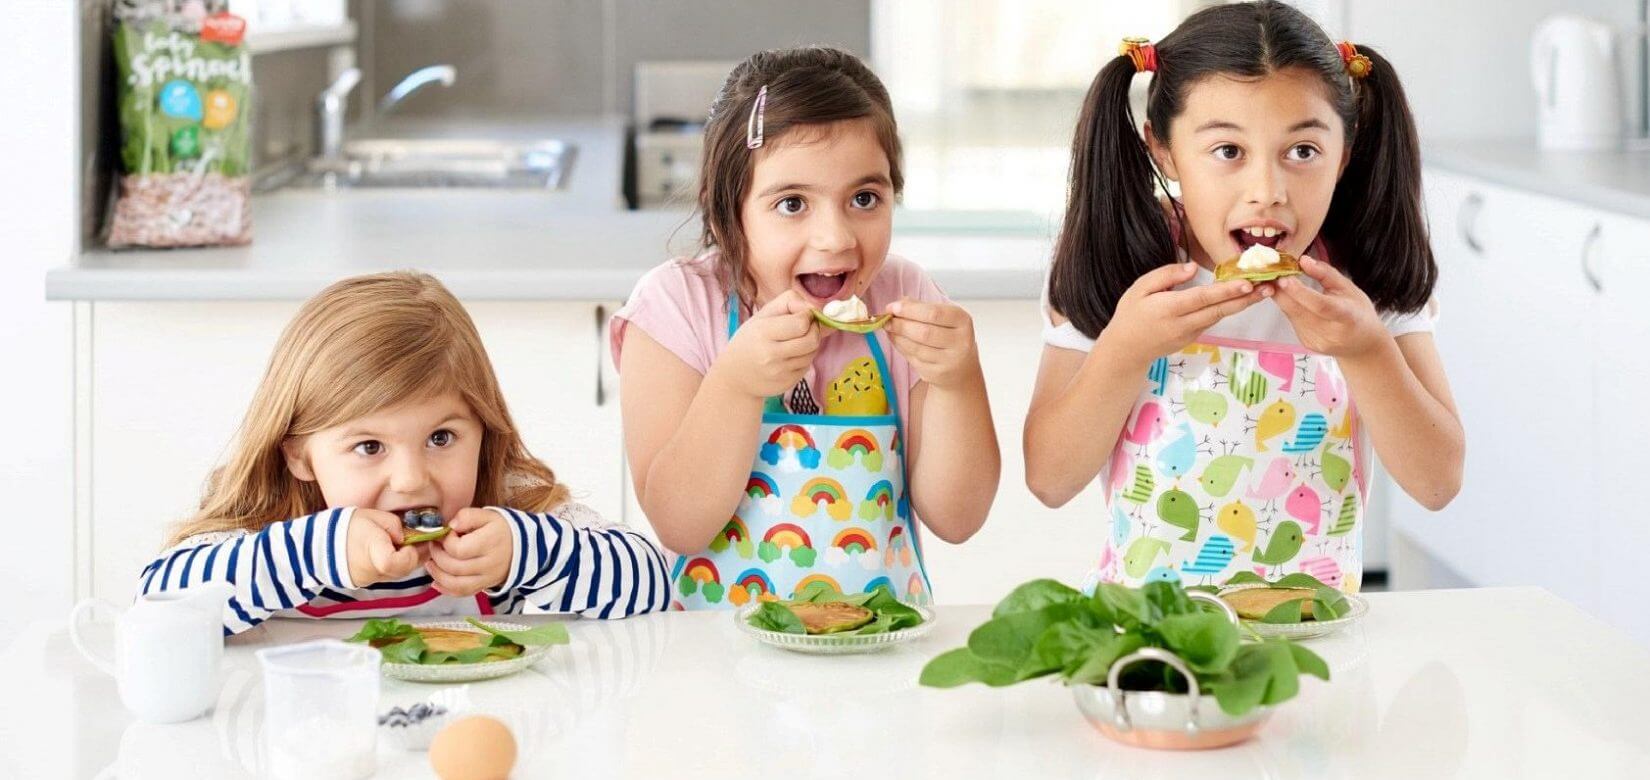 Ποιά τρόφιμα δεν πρέπει να λείπουν από την παιδική διατροφή;